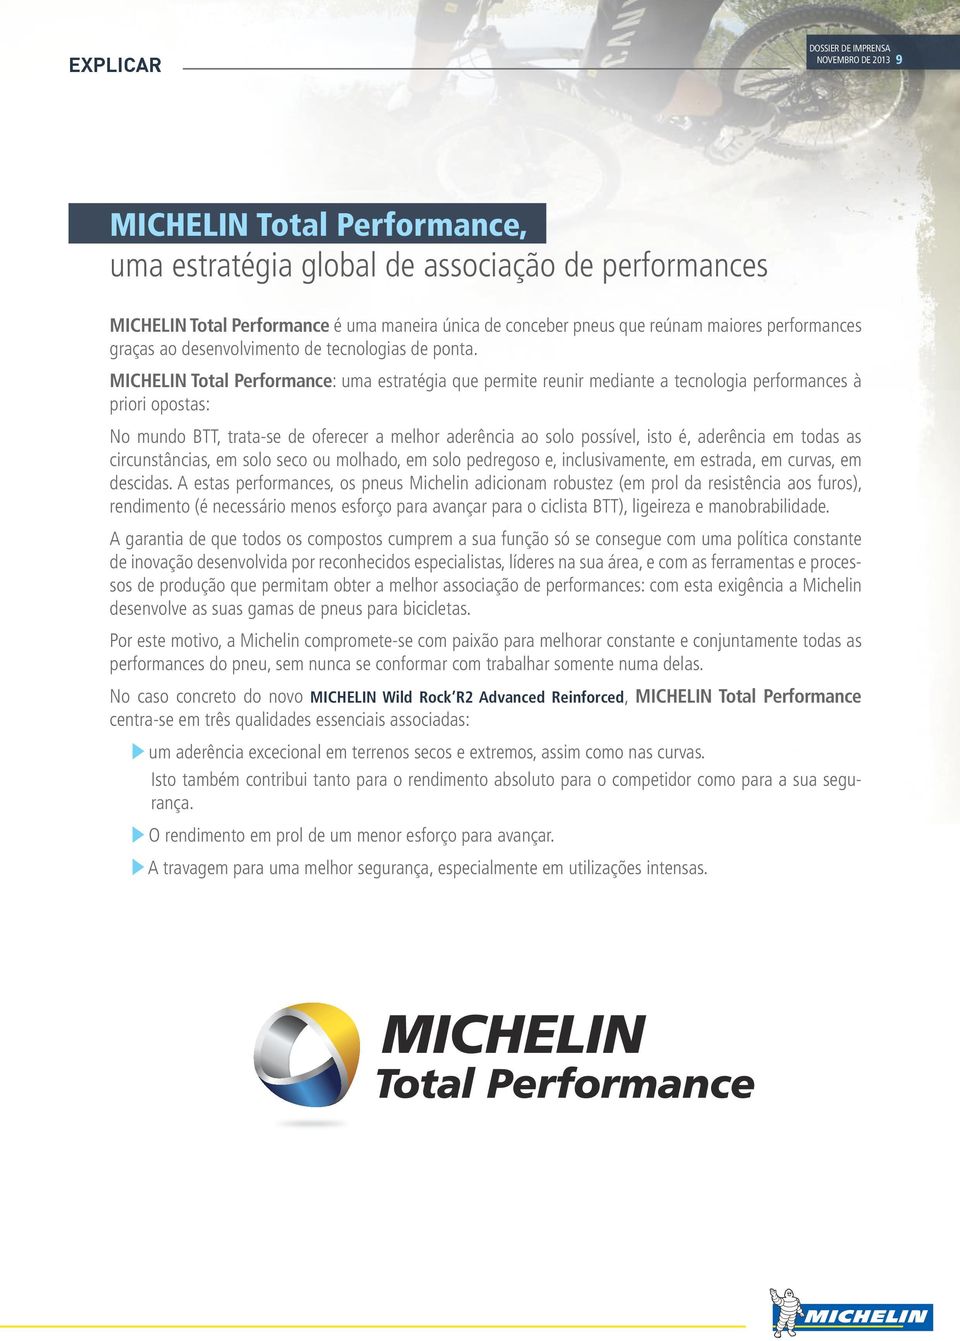 MICHELIN Total Performance: uma estratégia que permite reunir mediante a tecnologia performances à priori opostas: No mundo BTT, trata-se de oferecer a melhor aderência ao solo possível, isto é,